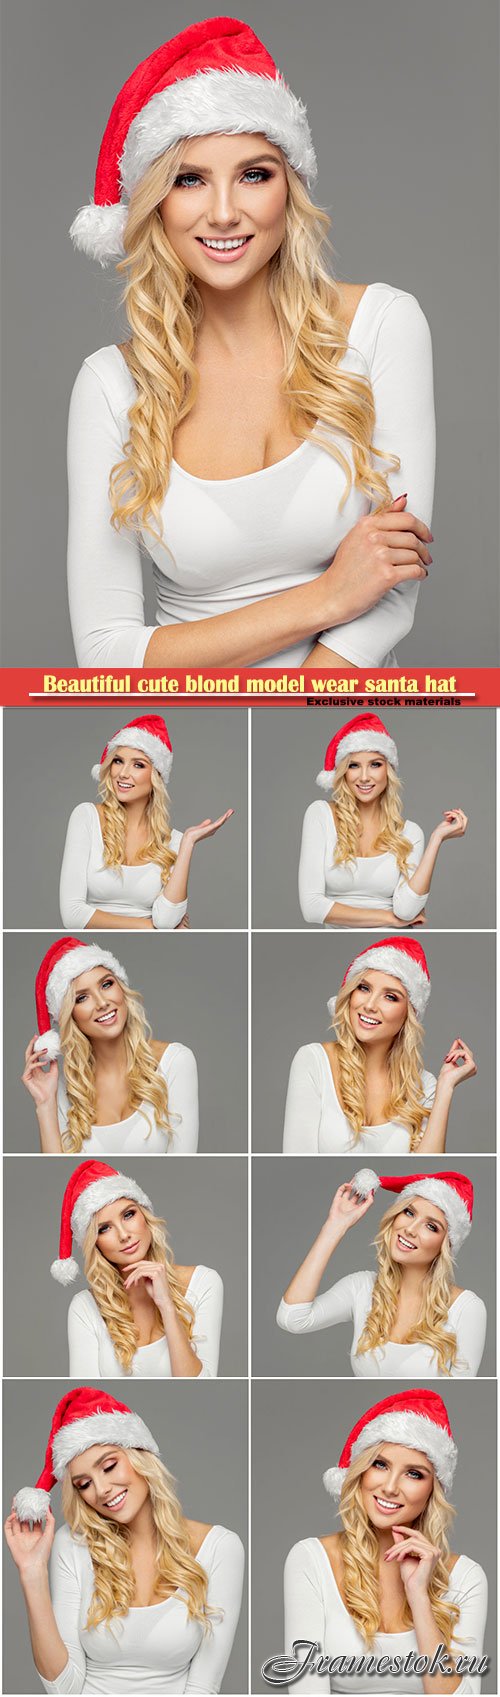 Beautiful cute blond model wear santa hat